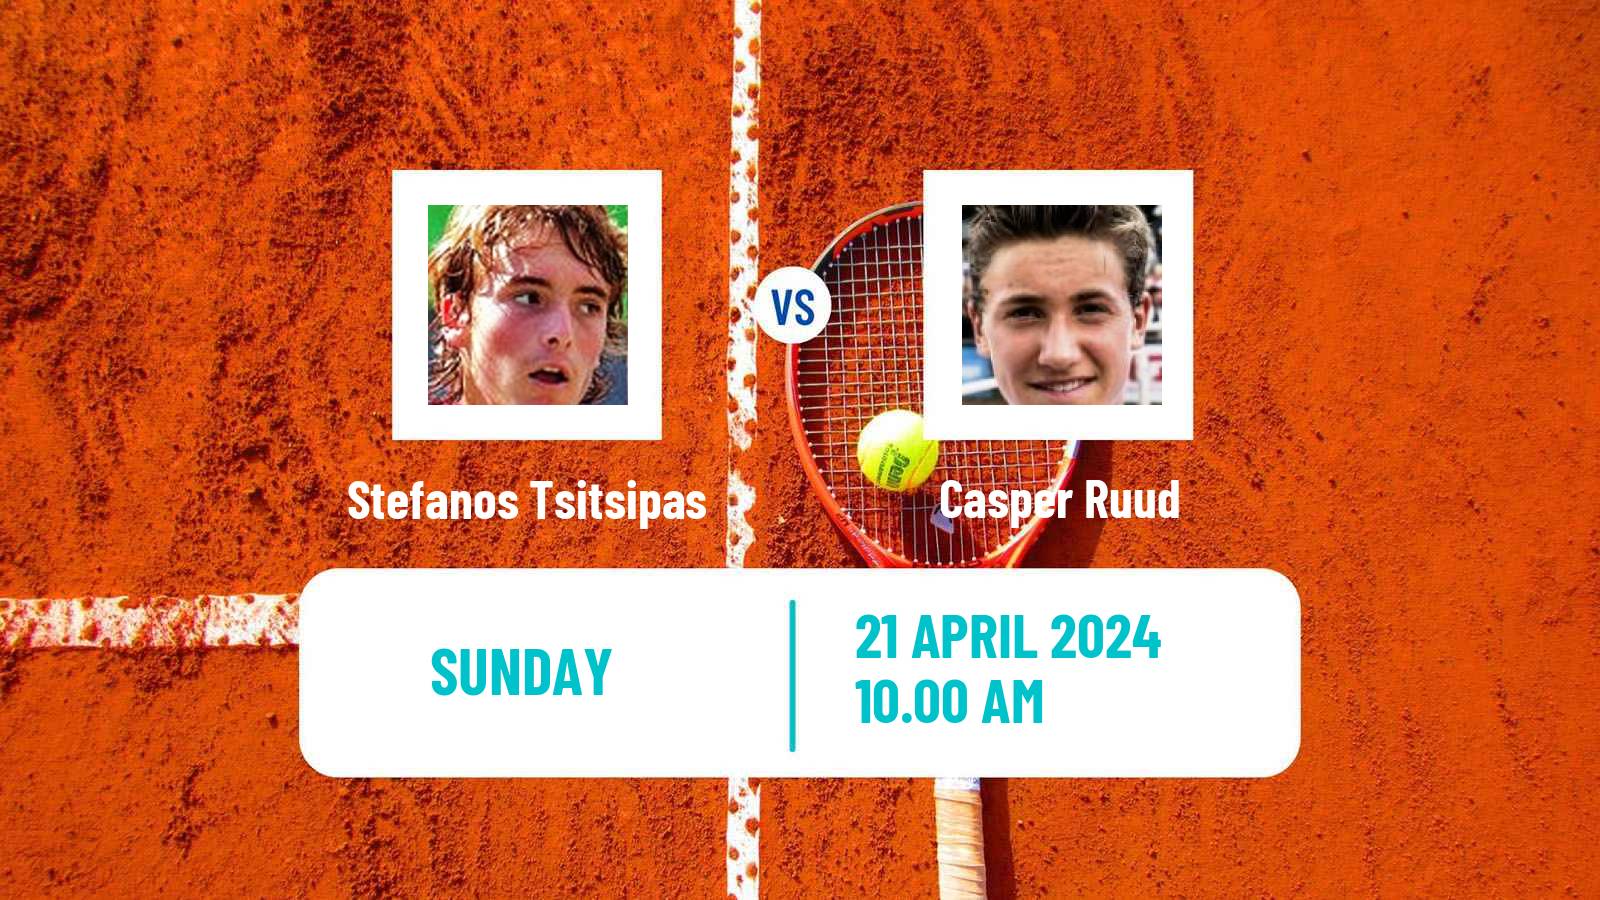 Tennis ATP Barcelona Stefanos Tsitsipas - Casper Ruud